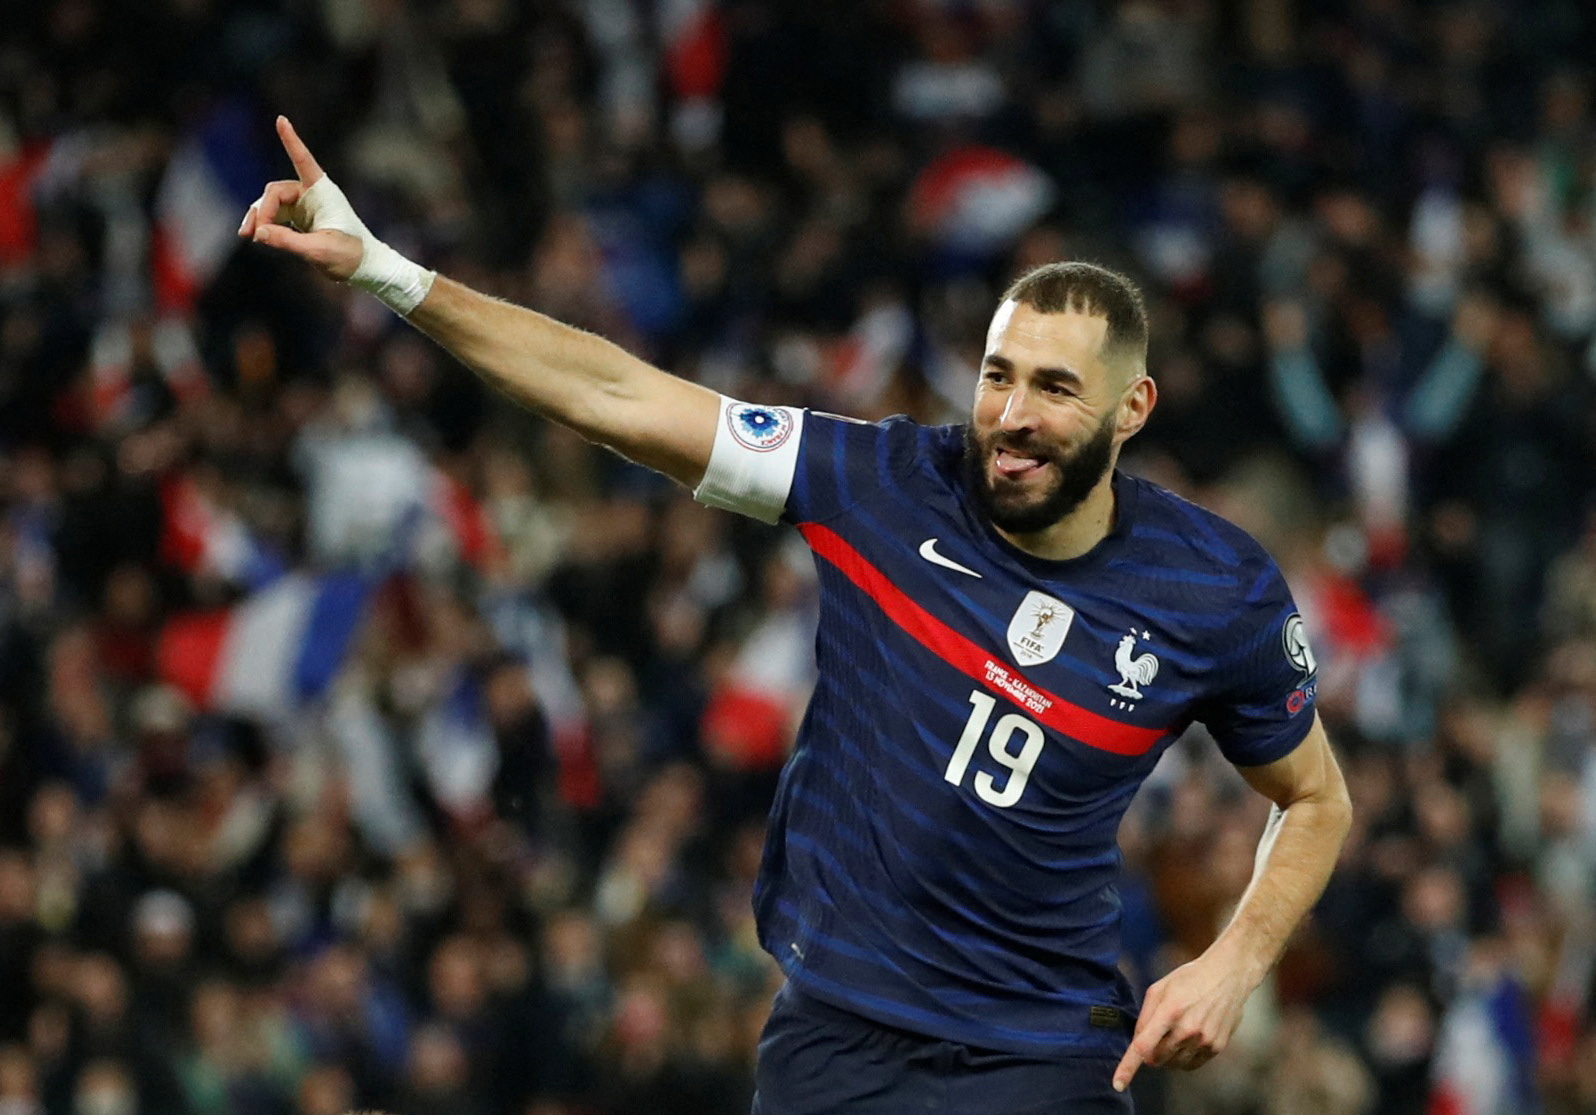 Đội tuyển Pháp vừa công bố đội hình dự World Cup 2022 với những bất ngờ và kì vọng. Những ngôi sao sáng giá như Kylian Mbappe, Antoine Griezmann hay Paul Pogba đều có mặt trong danh sách. Đối với những fan hâm mộ bóng đá, việc theo dõi đội tuyển Pháp sẽ là cơ hội để thưởng thức những pha tranh tài, kỳ vọng vào chiến thắng của đội nhà.